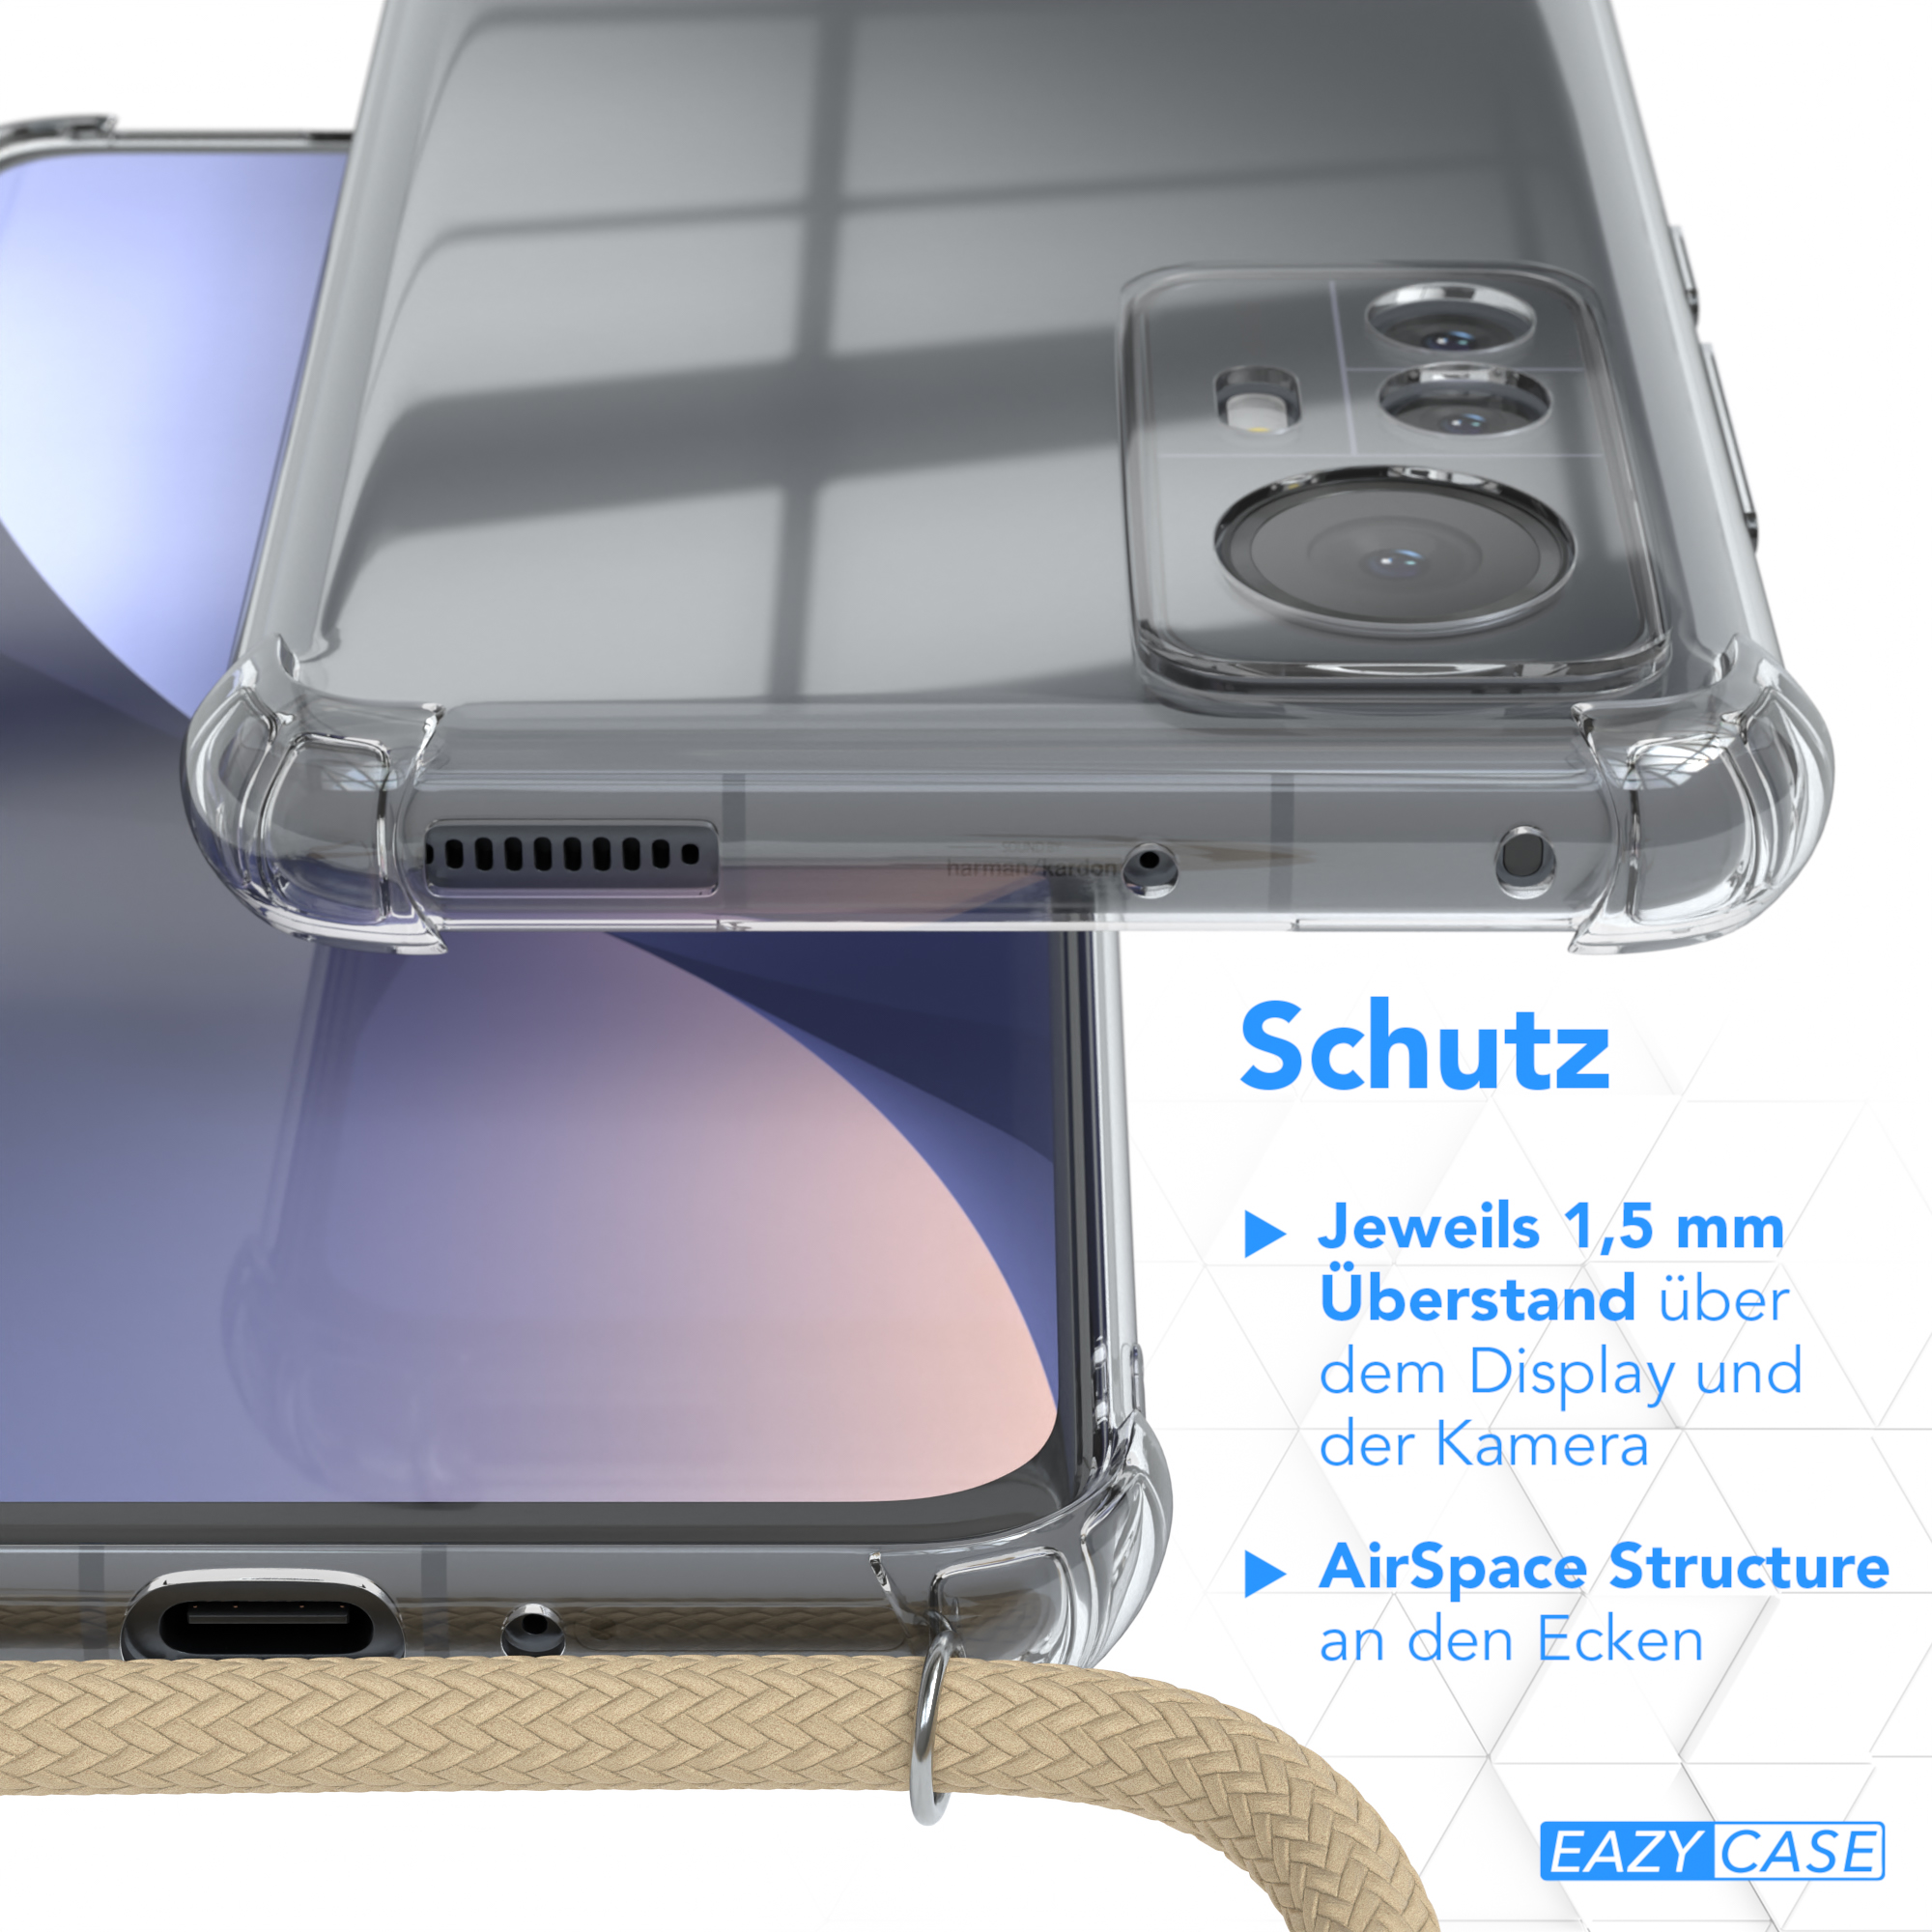 EAZY CASE Clear Cover mit Xiaomi, Taupe Beige / 12X, Umhängeband, Umhängetasche, 12